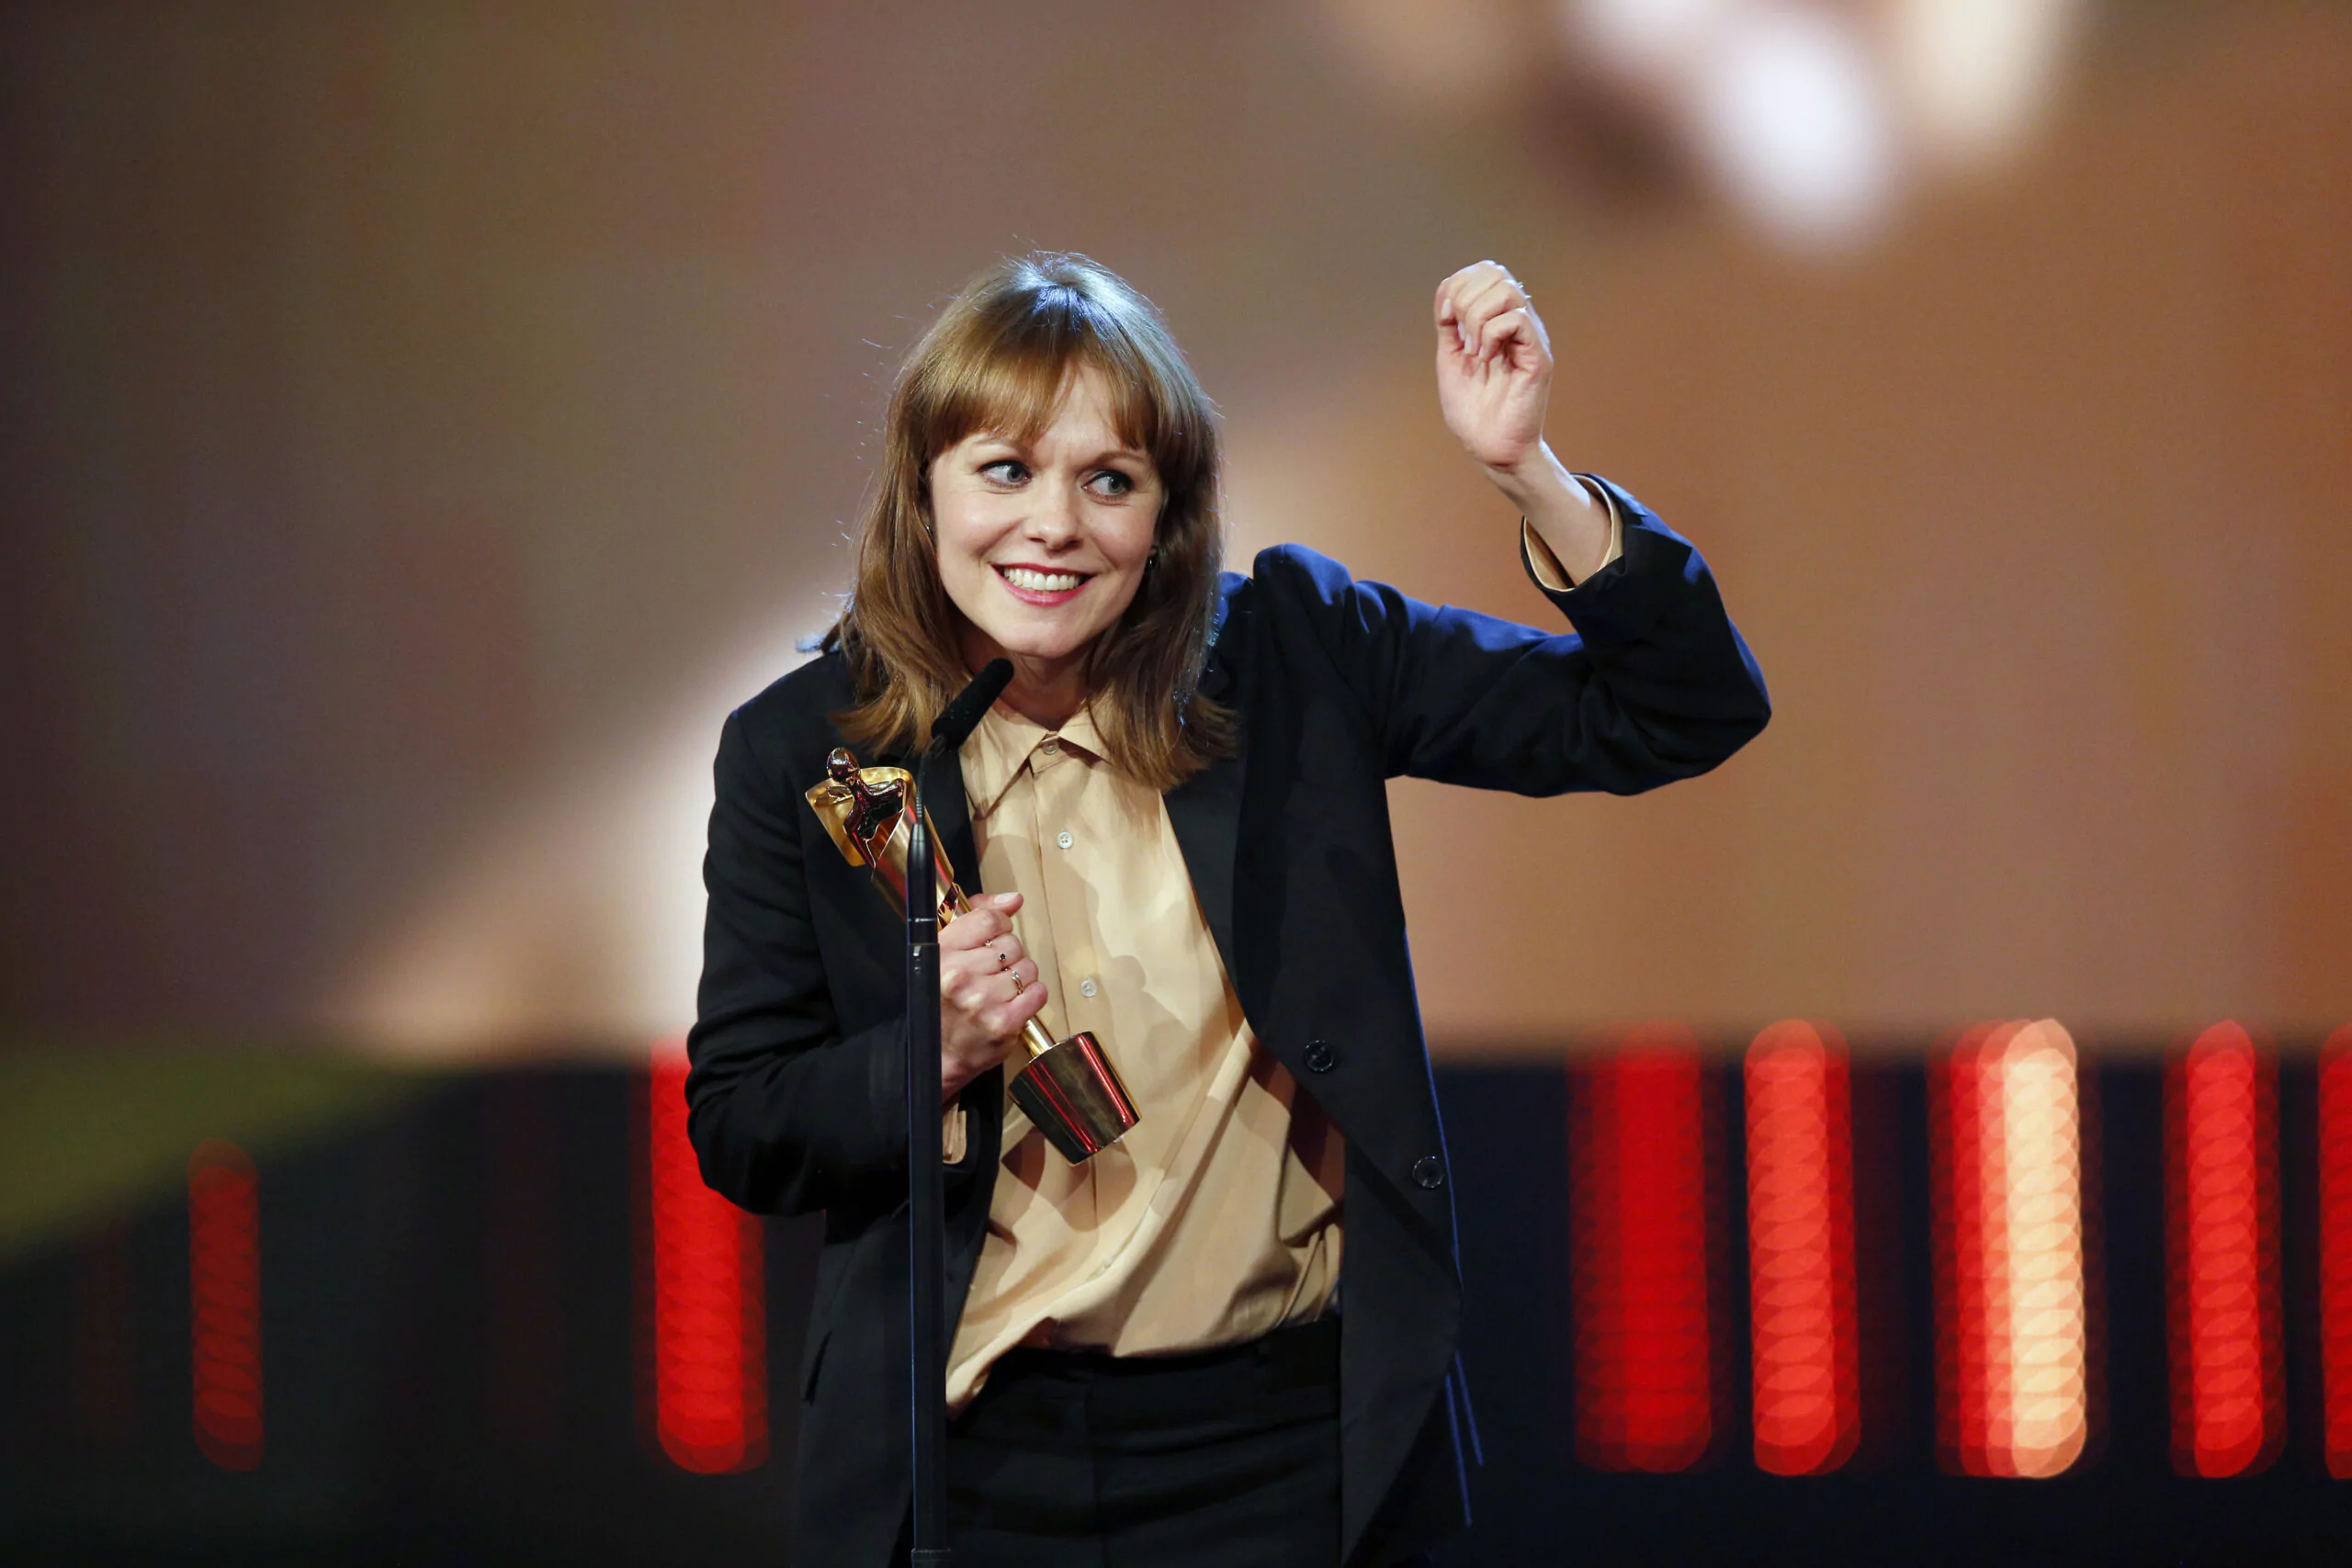 Maren Ade gewinnt den Preis als bester Regisseur für den Film "Toni Erdmann"